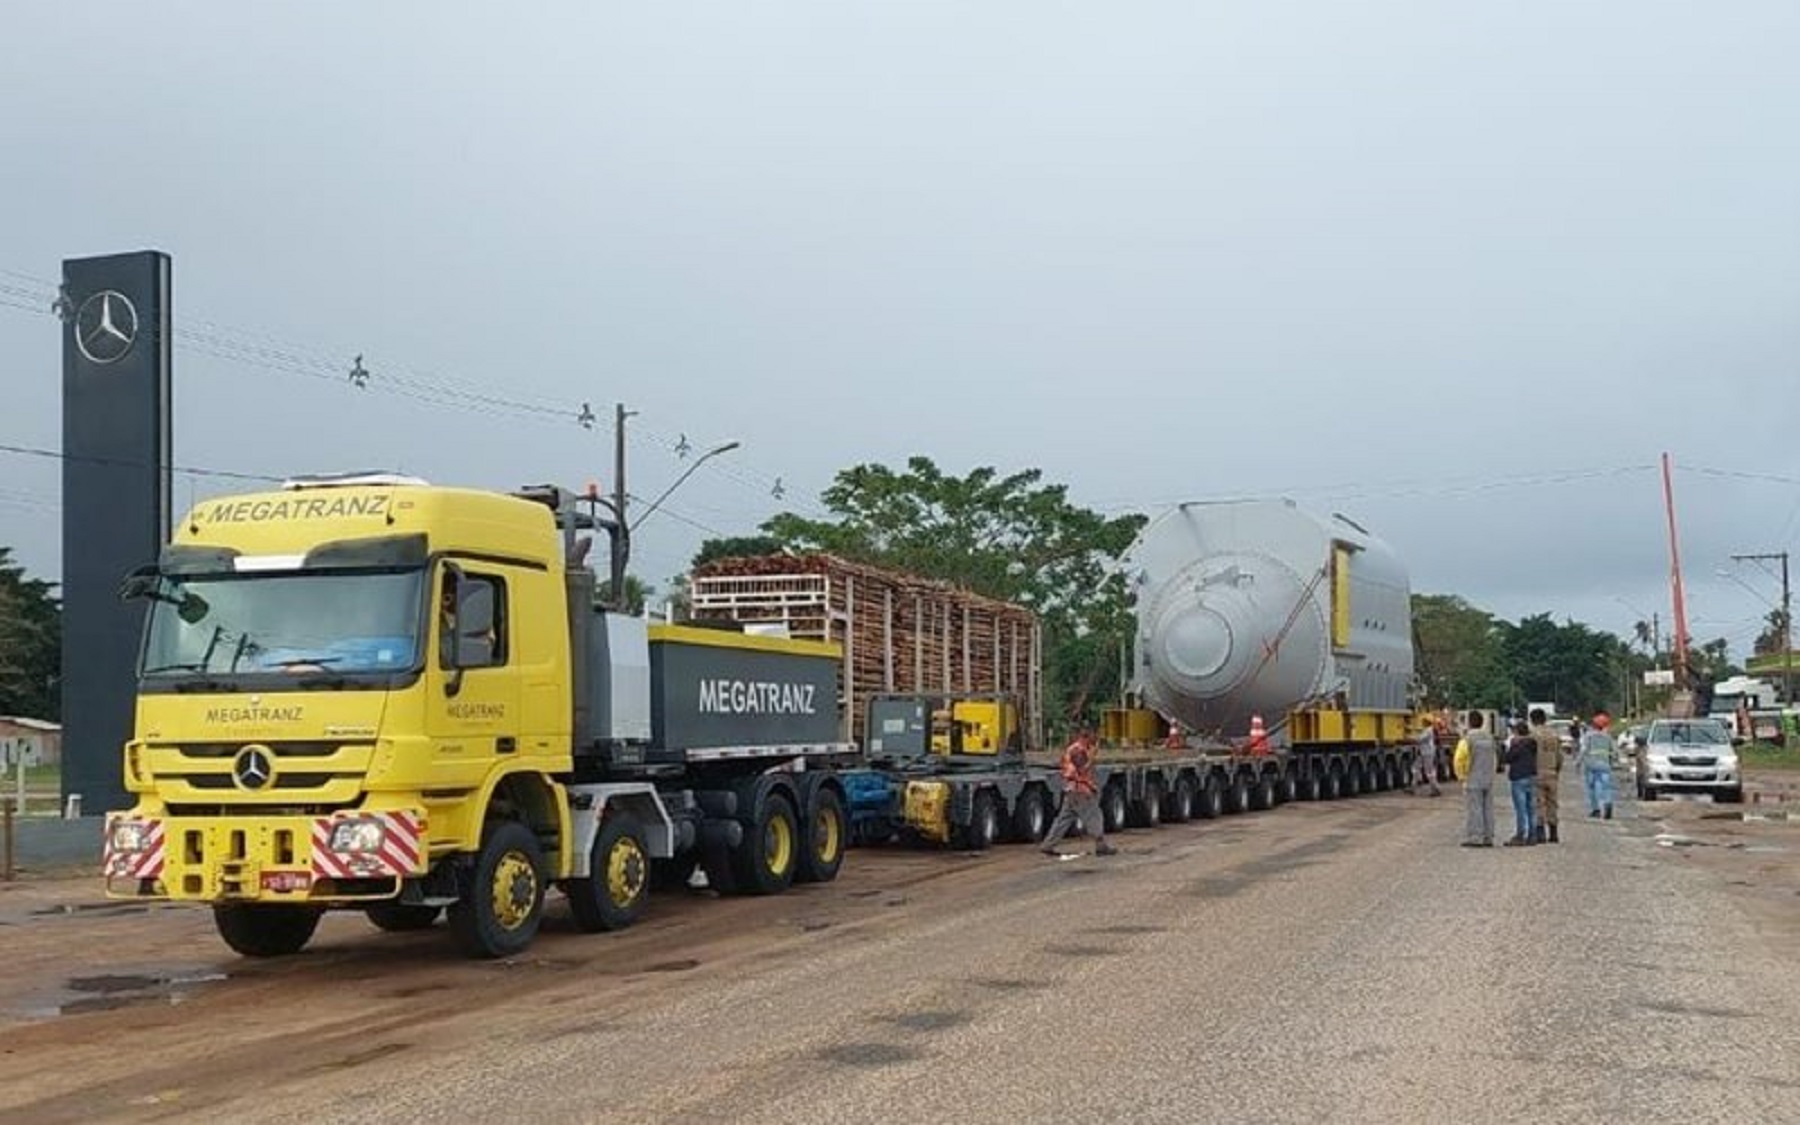 Caminhão com mais de 15 eixos trafega em avenida da Bahia levando carga gigante